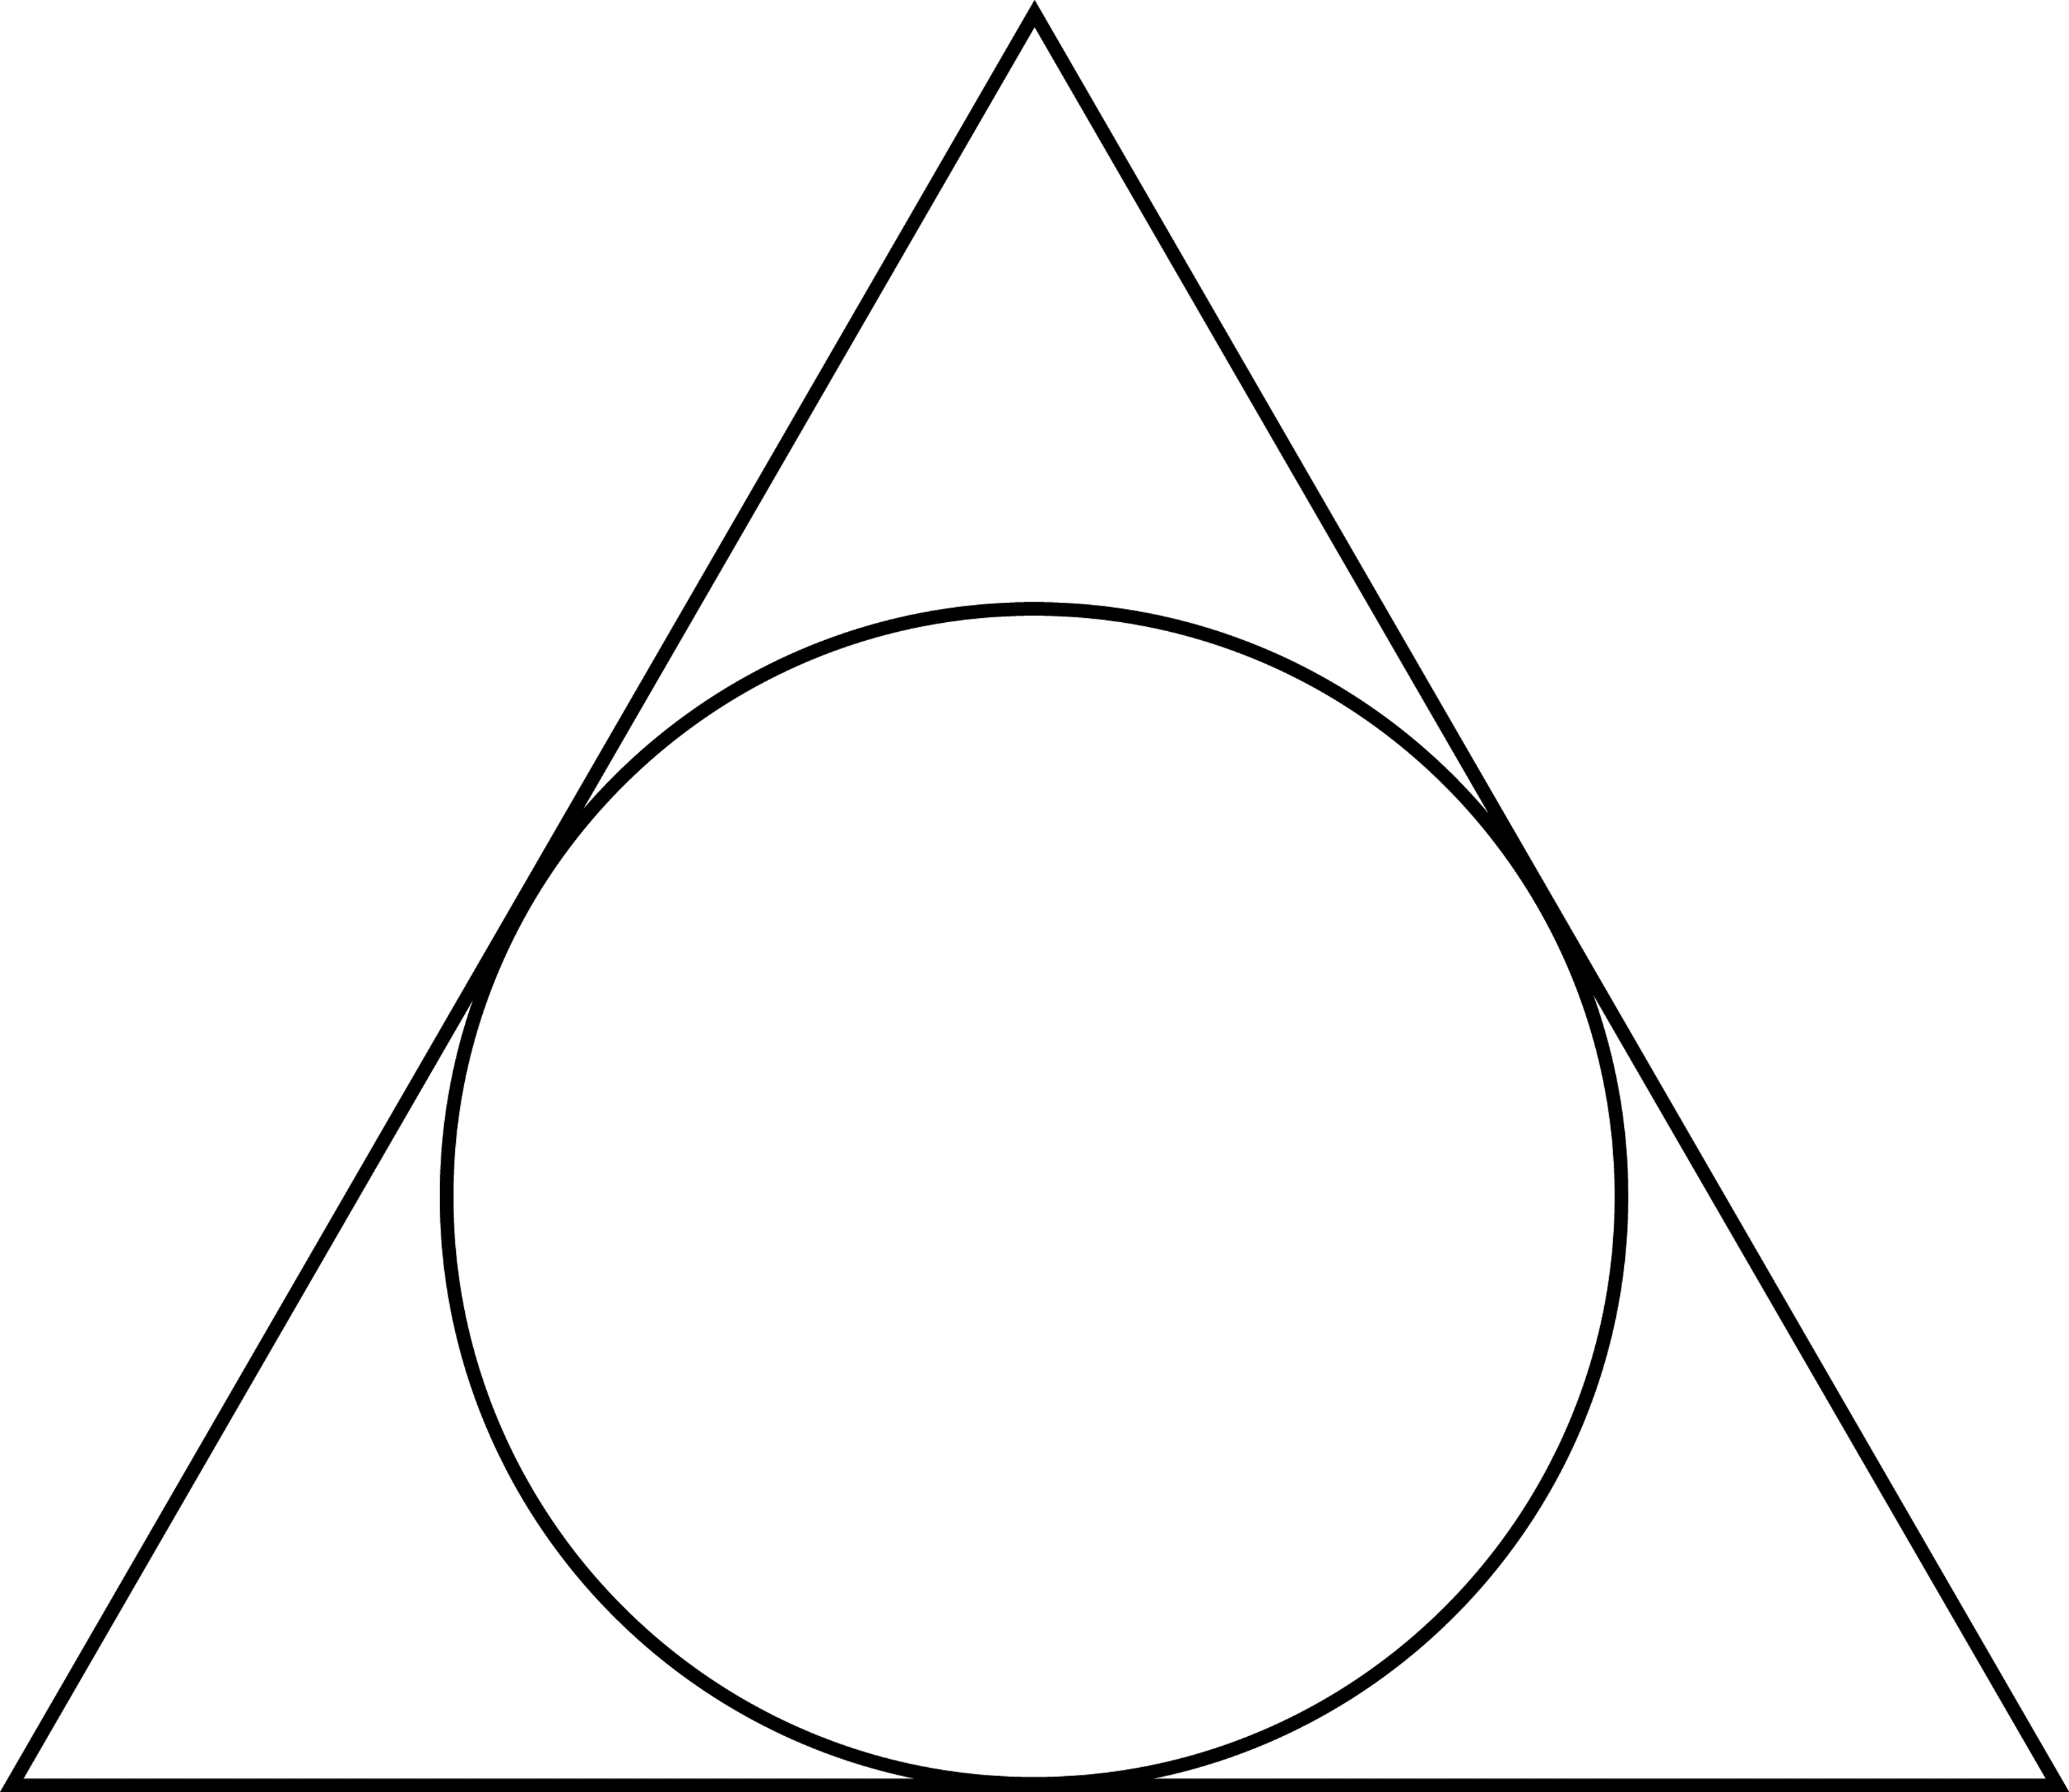 Шар формы треугольника. Треугольник в круге. Треугольник с кругом внутри. Равносторонний треугольник в круге. Вписанные фигуры.